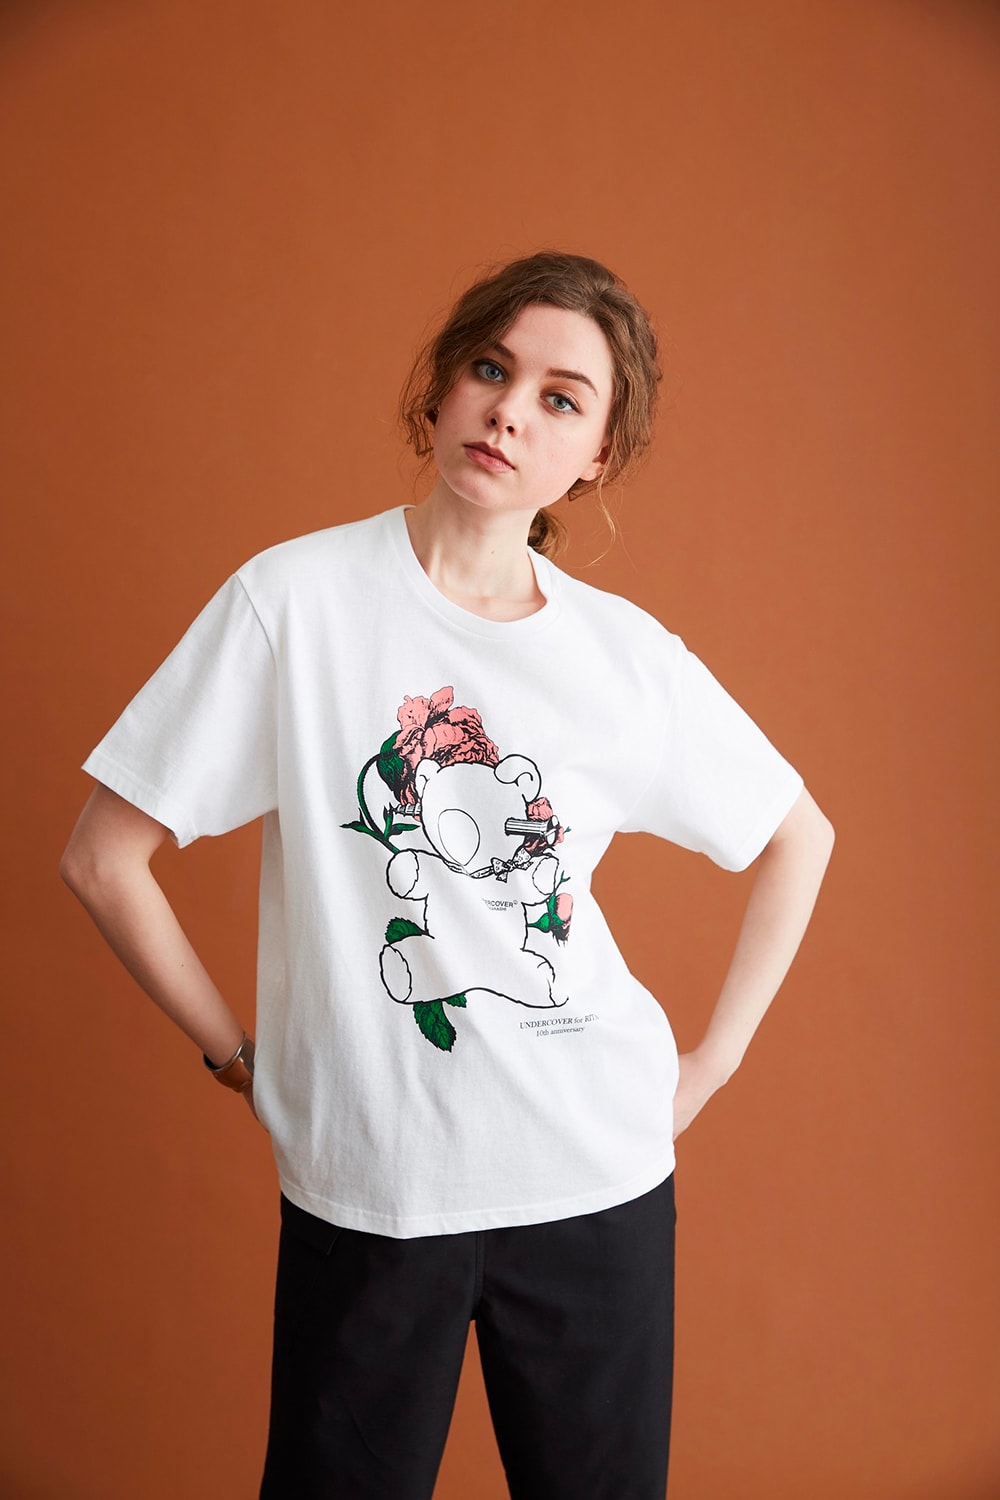 준 타카하시의 언더커버 x 리타 10주년 기념 협업 컬렉션 공개 및 발매 정보, 티셔츠, 후디 